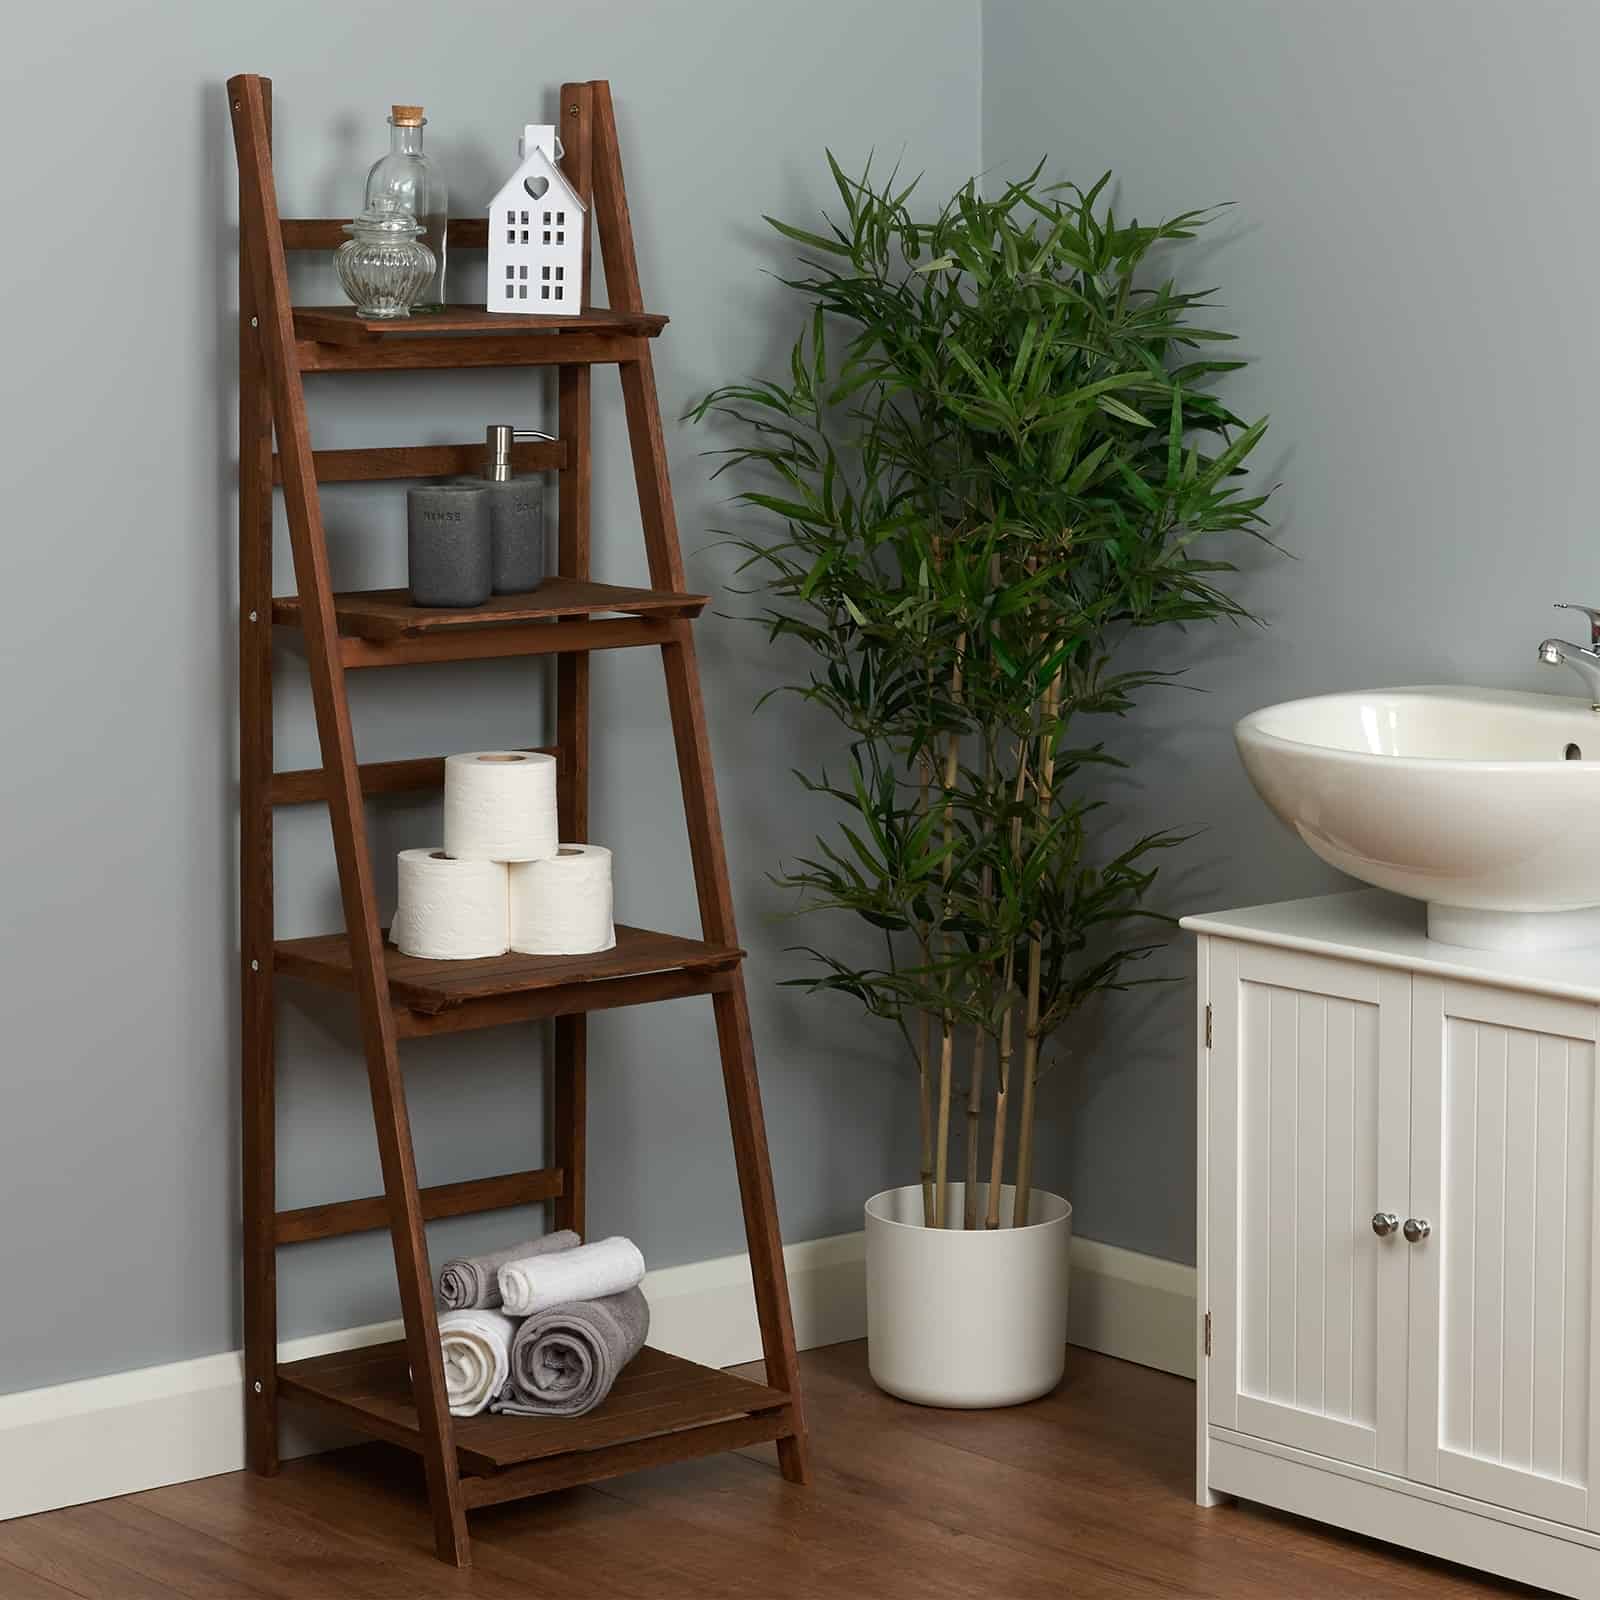 Ladder Shelf For Bathroom Storage